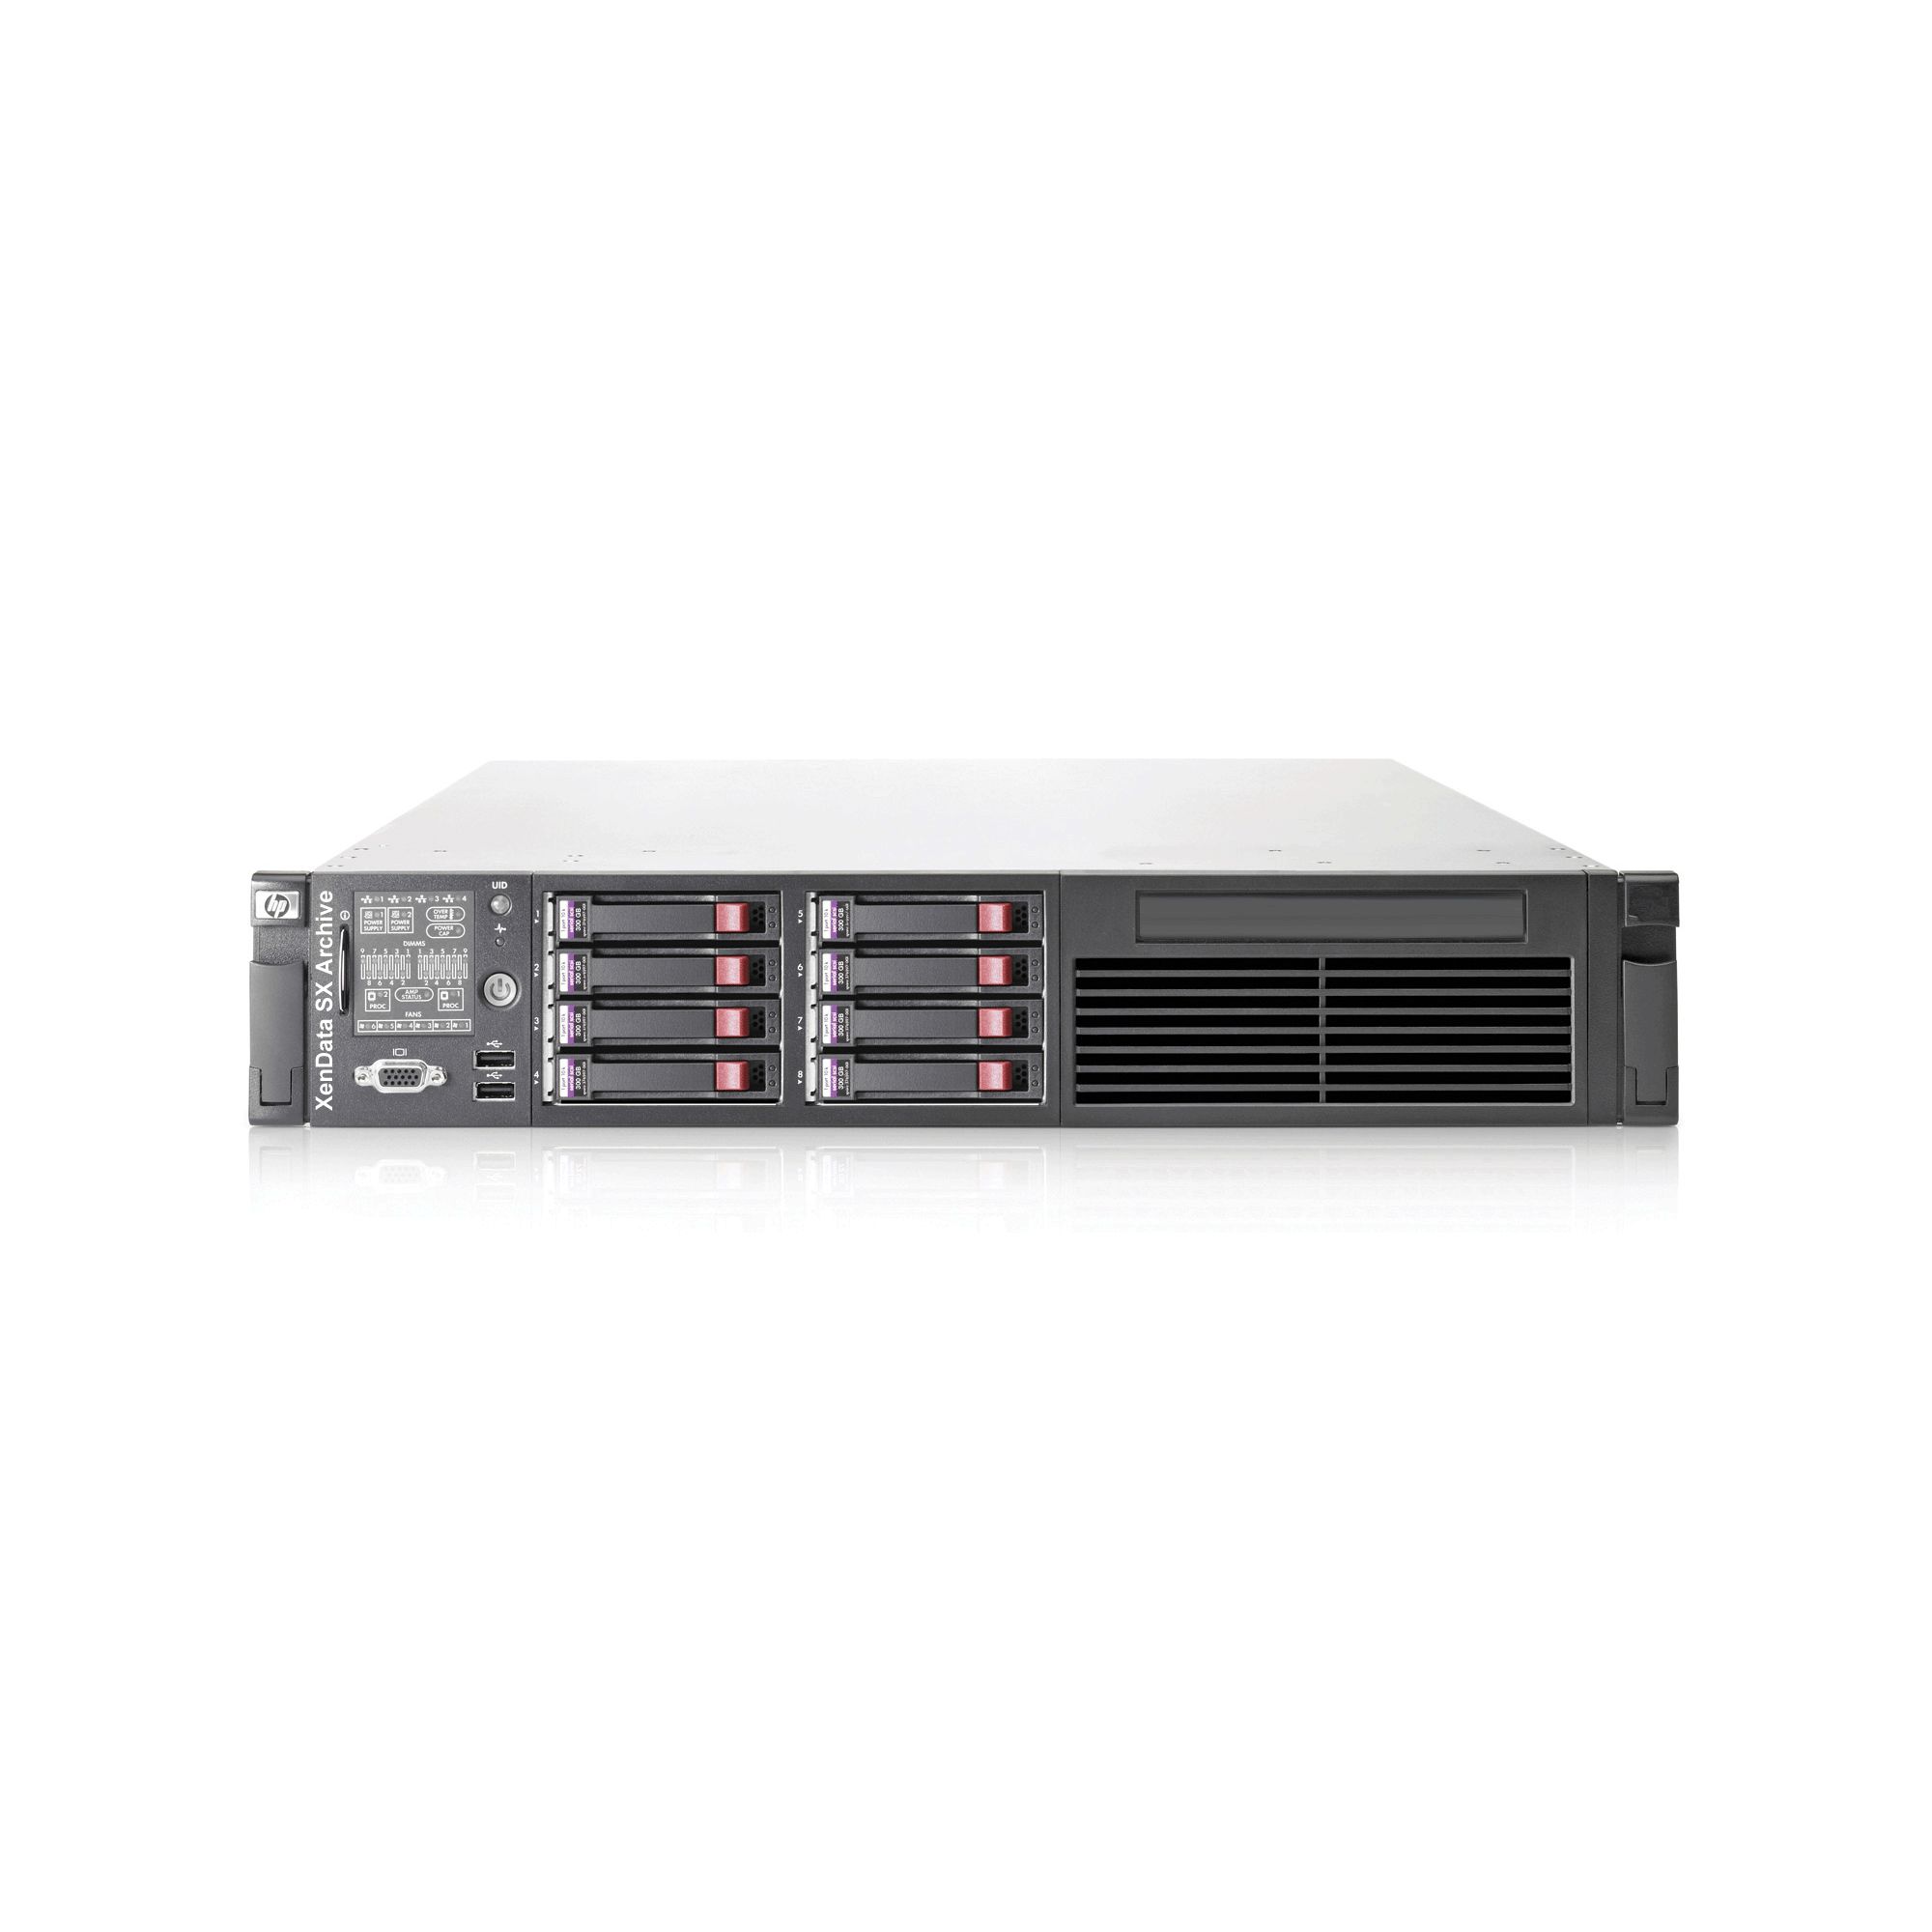 Hewlett-Packard 573087-421 ProLiant DL385 G7 6174 Server